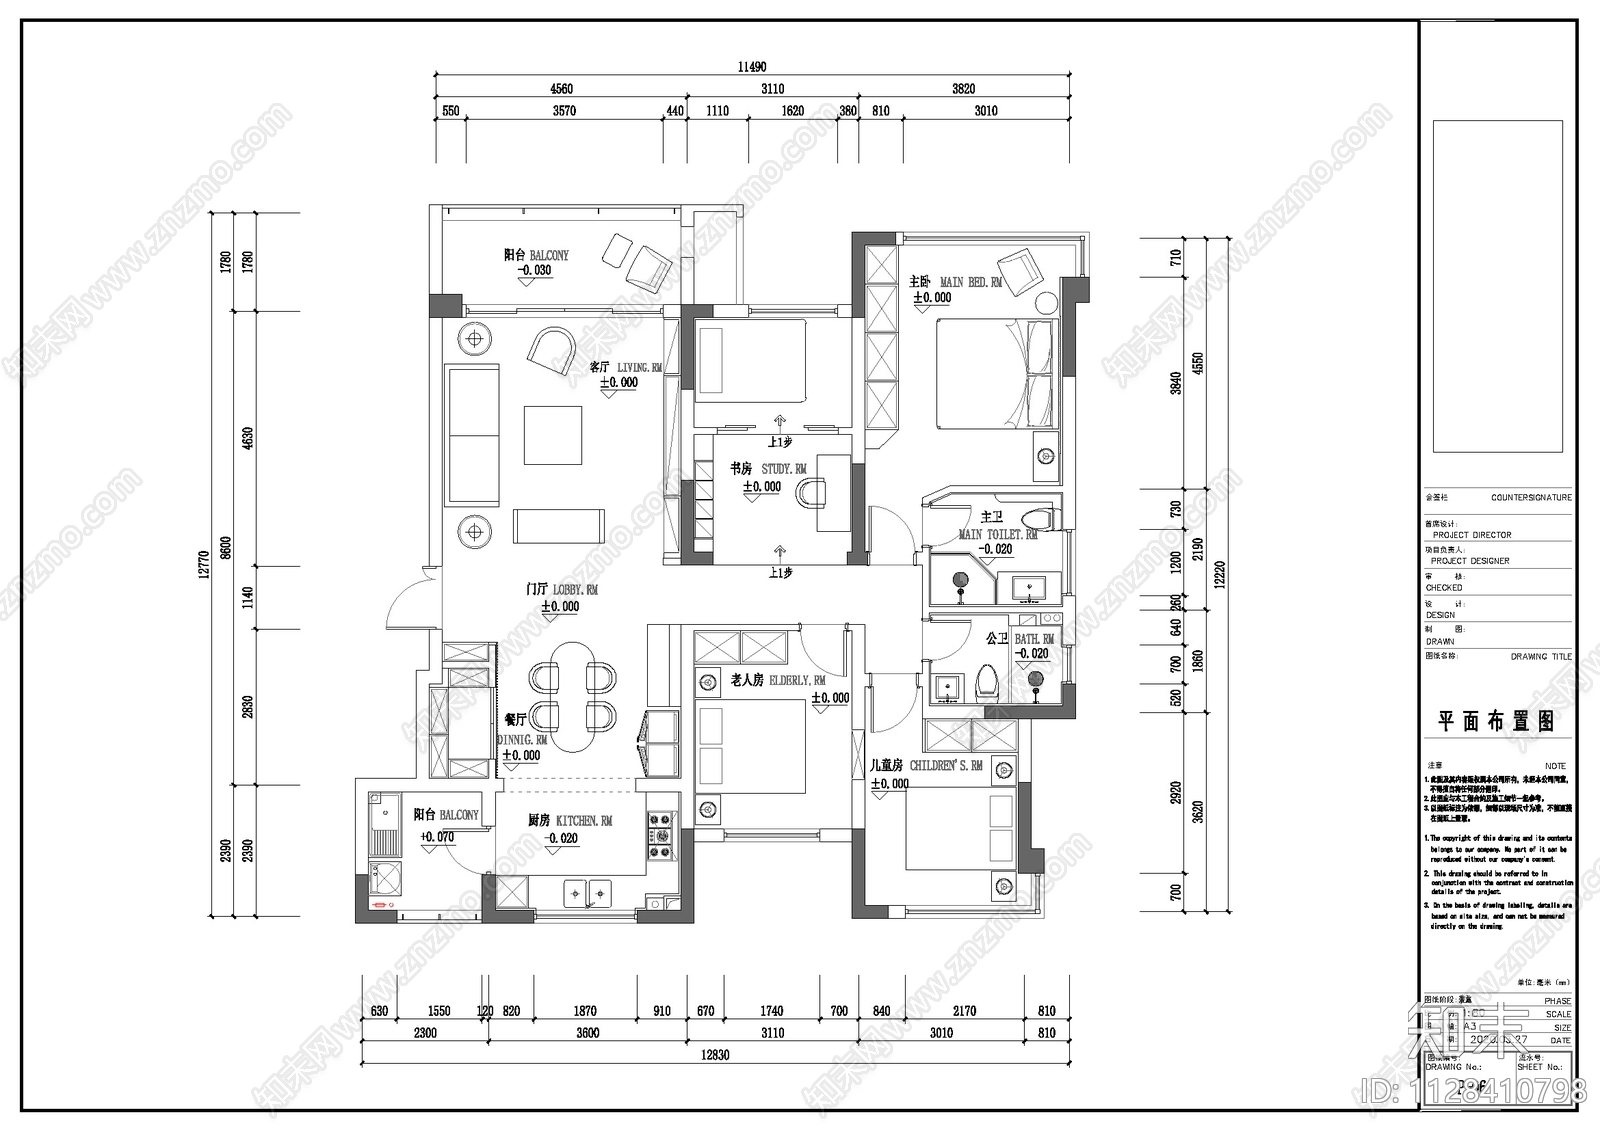 燕滨北居 - 现代风格四室两厅装修效果图 - 苏凯设计效果图 - 躺平设计家